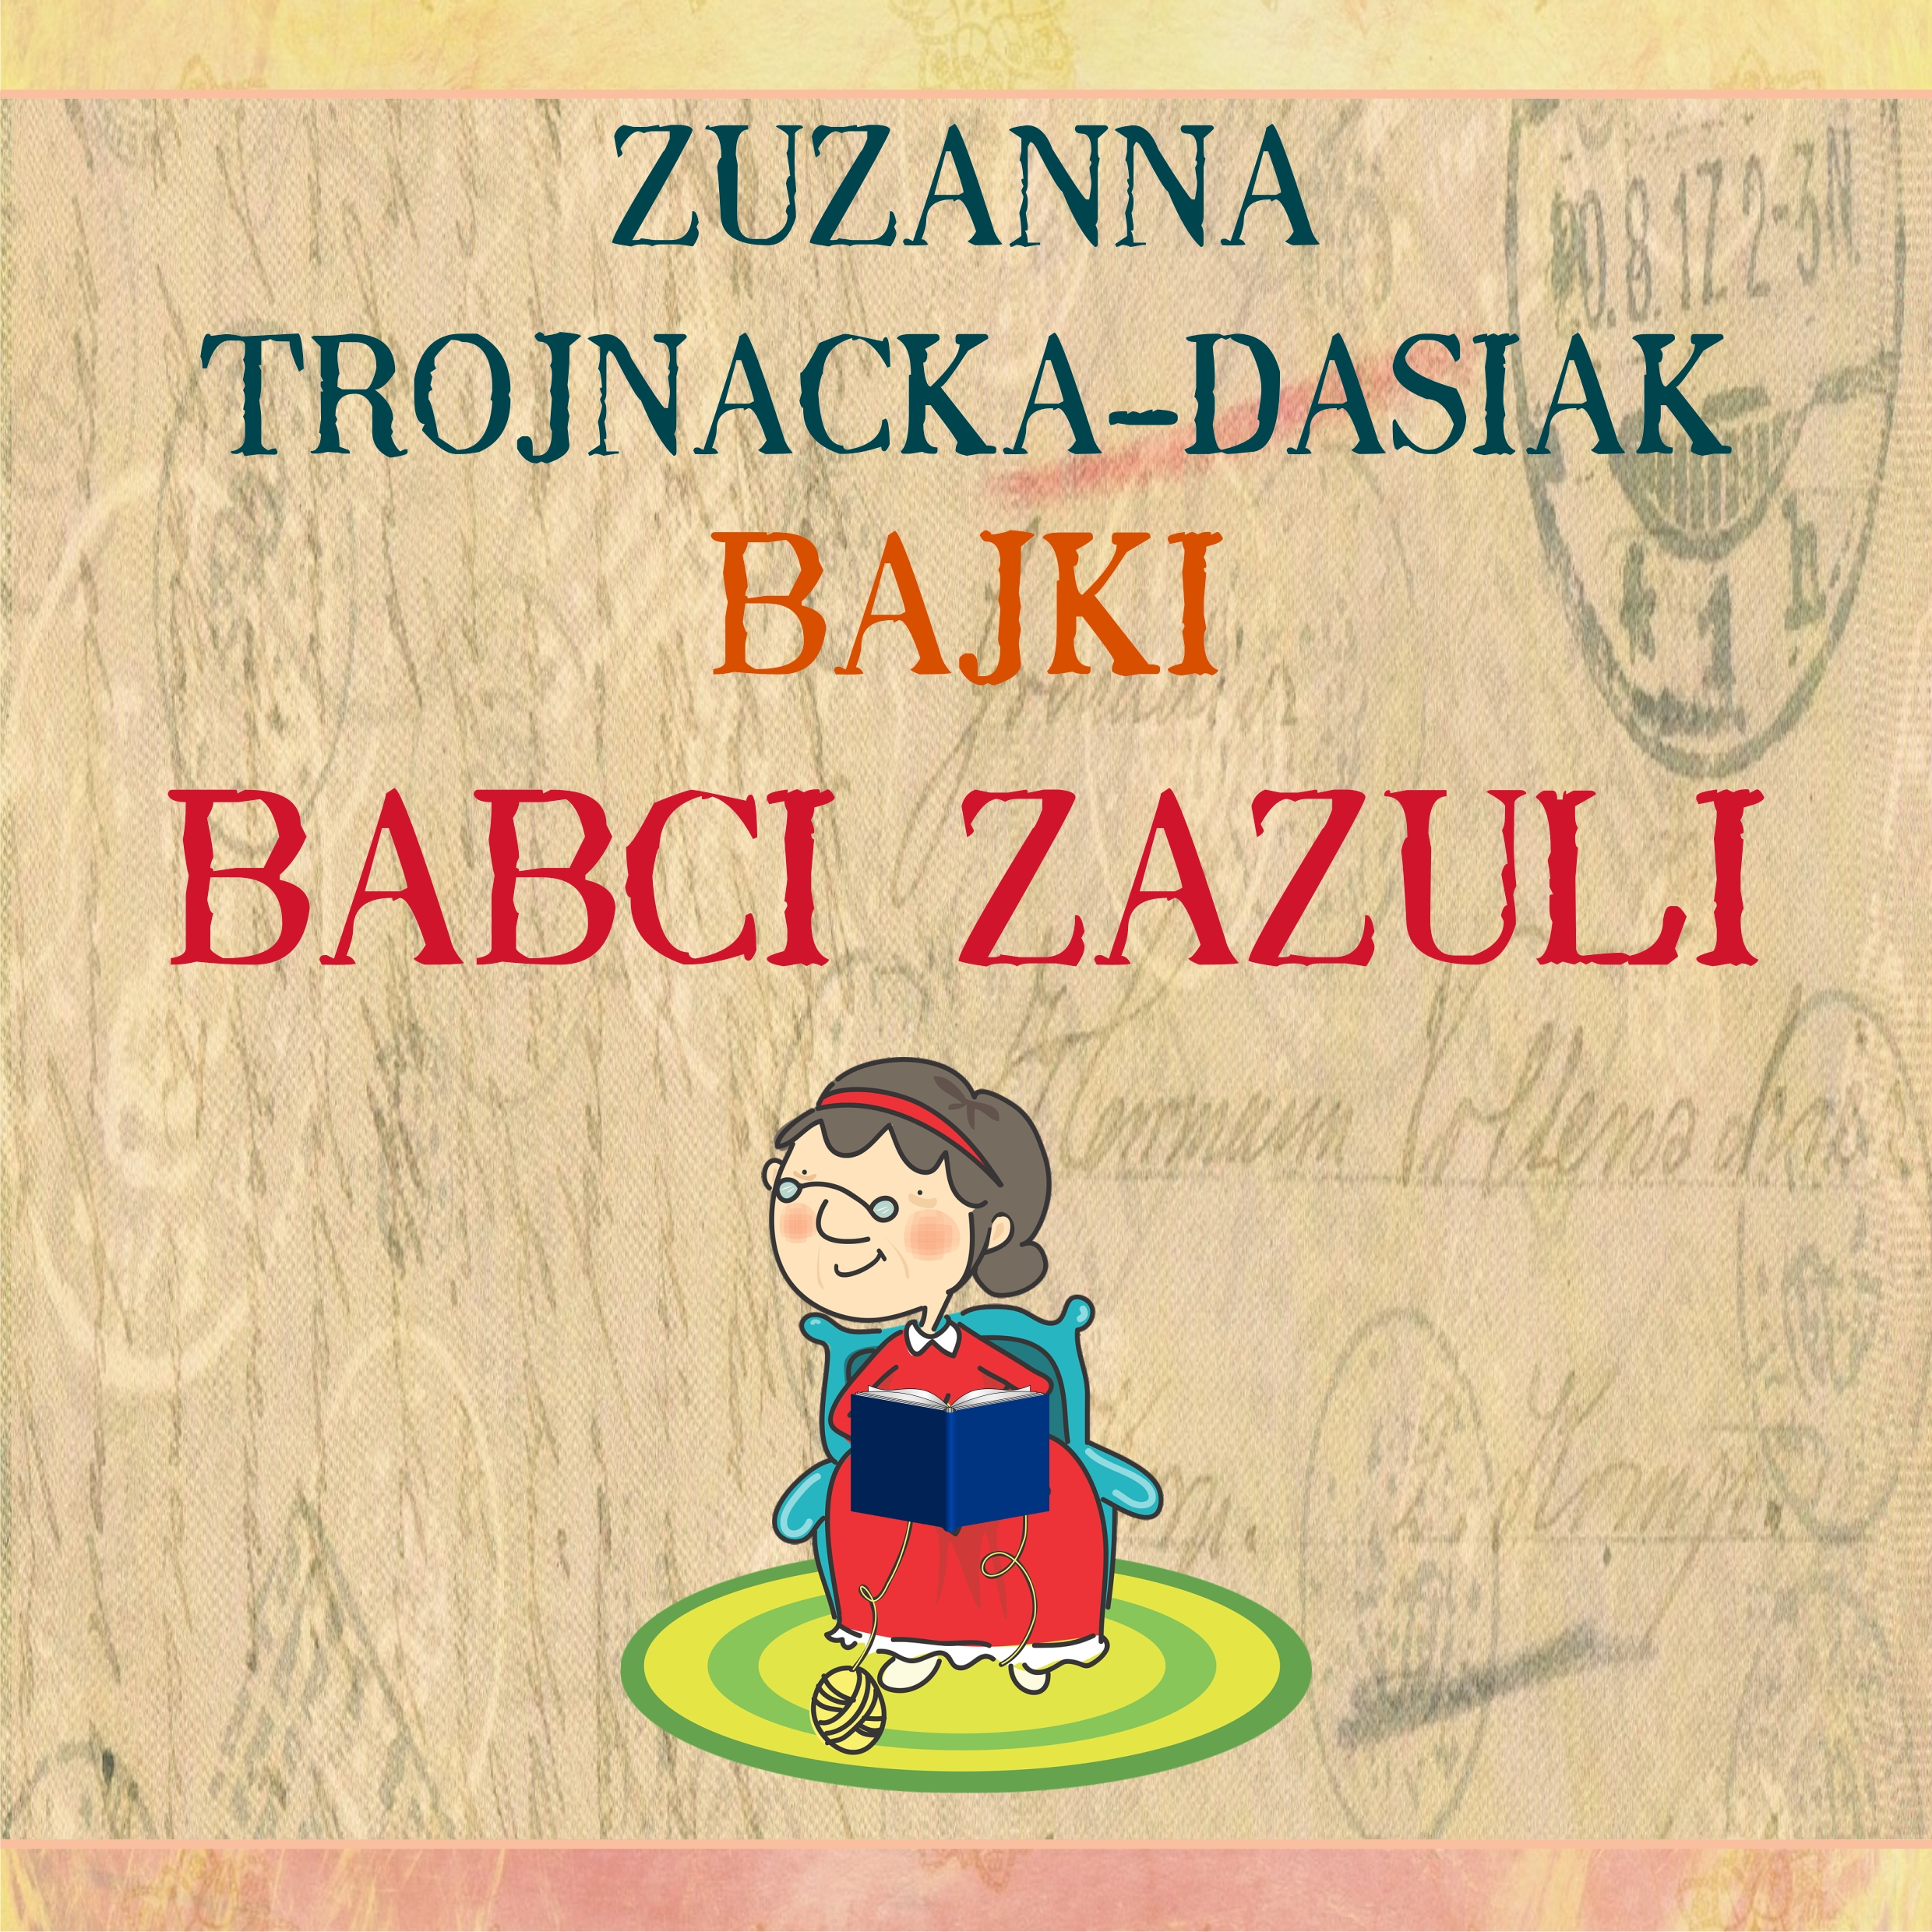 Zuzanna Trojnacka Dasiak – Kwadrat